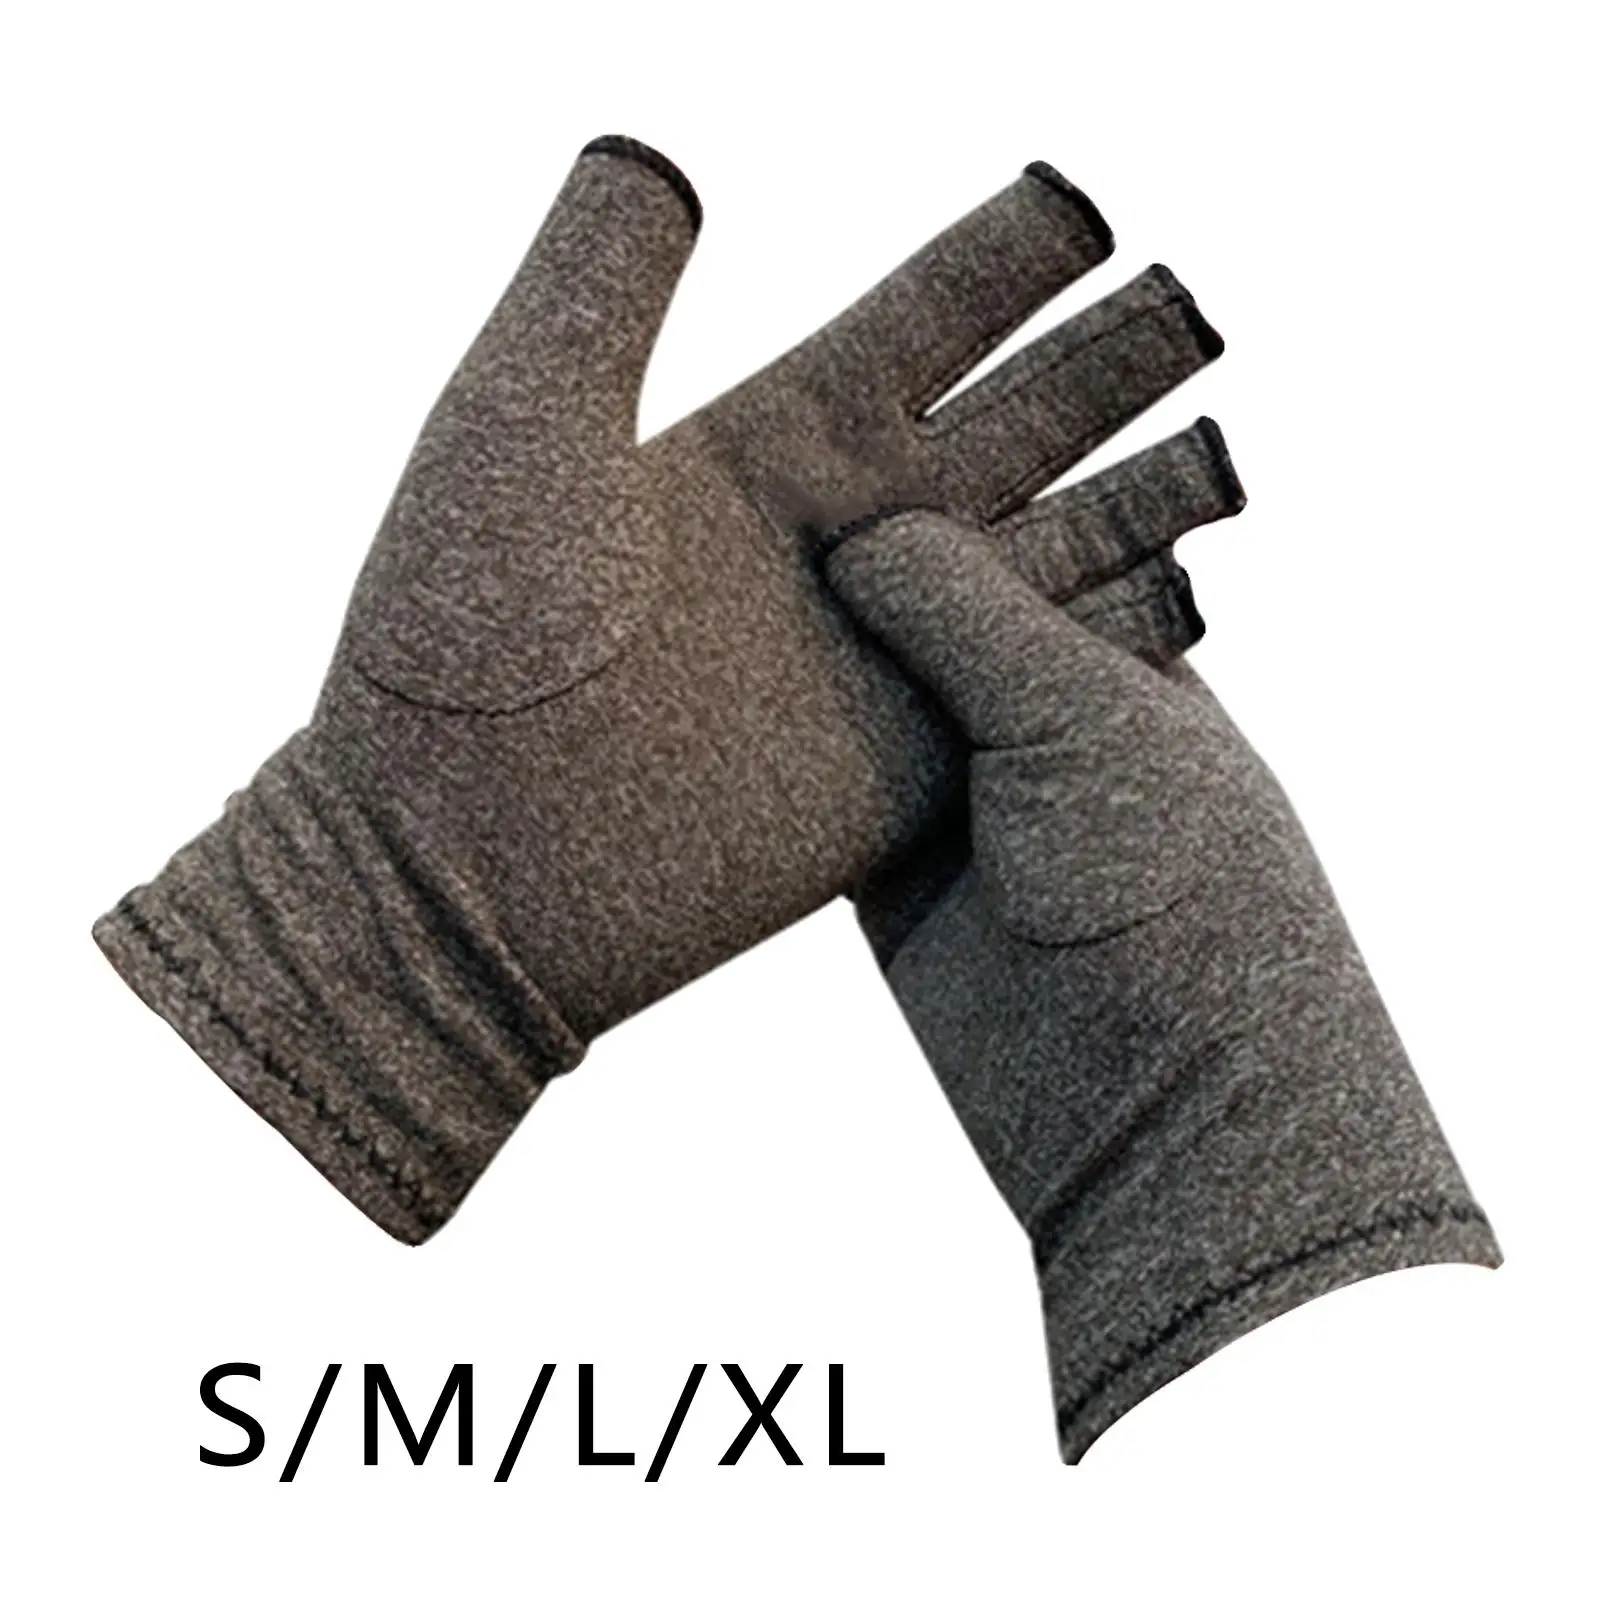 Arthritis Gloves, Compression Gloves for Hands and Fingers, Arthritis Gloves for